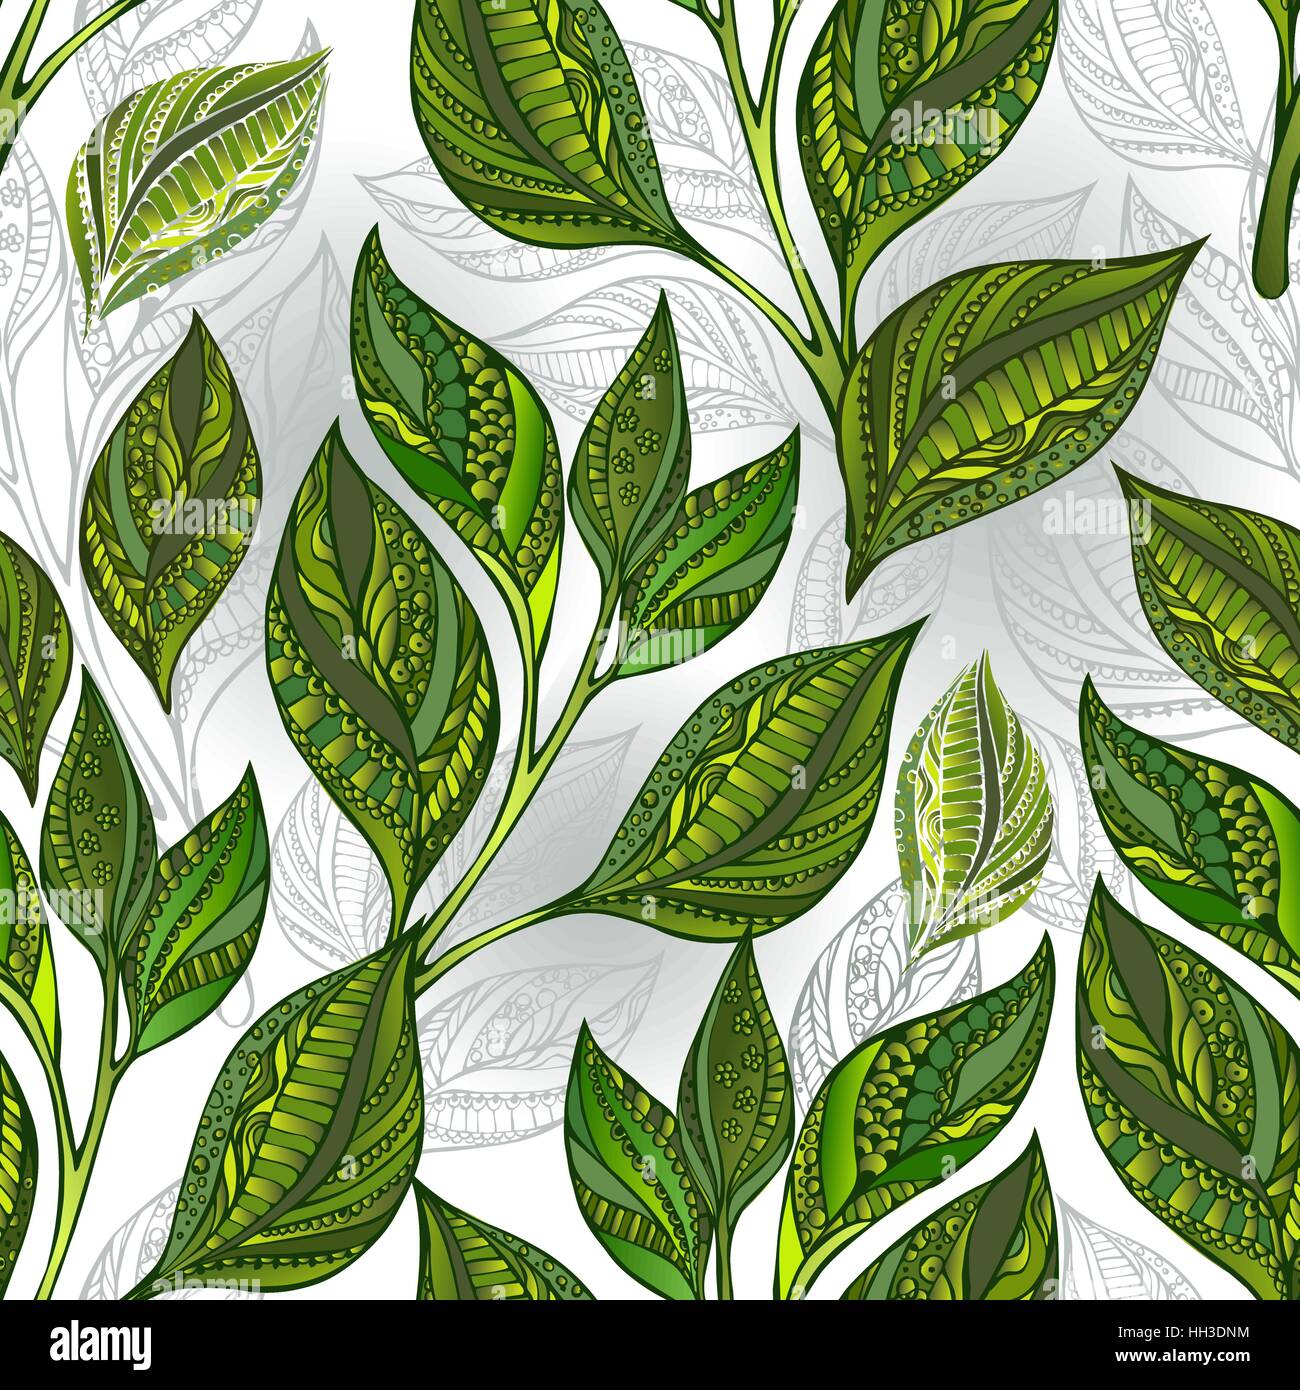 Nahtloses Muster grün gemusterten Tee Blätter und Sprossen auf hellem Hintergrund. Tee-Design. Stock Vektor